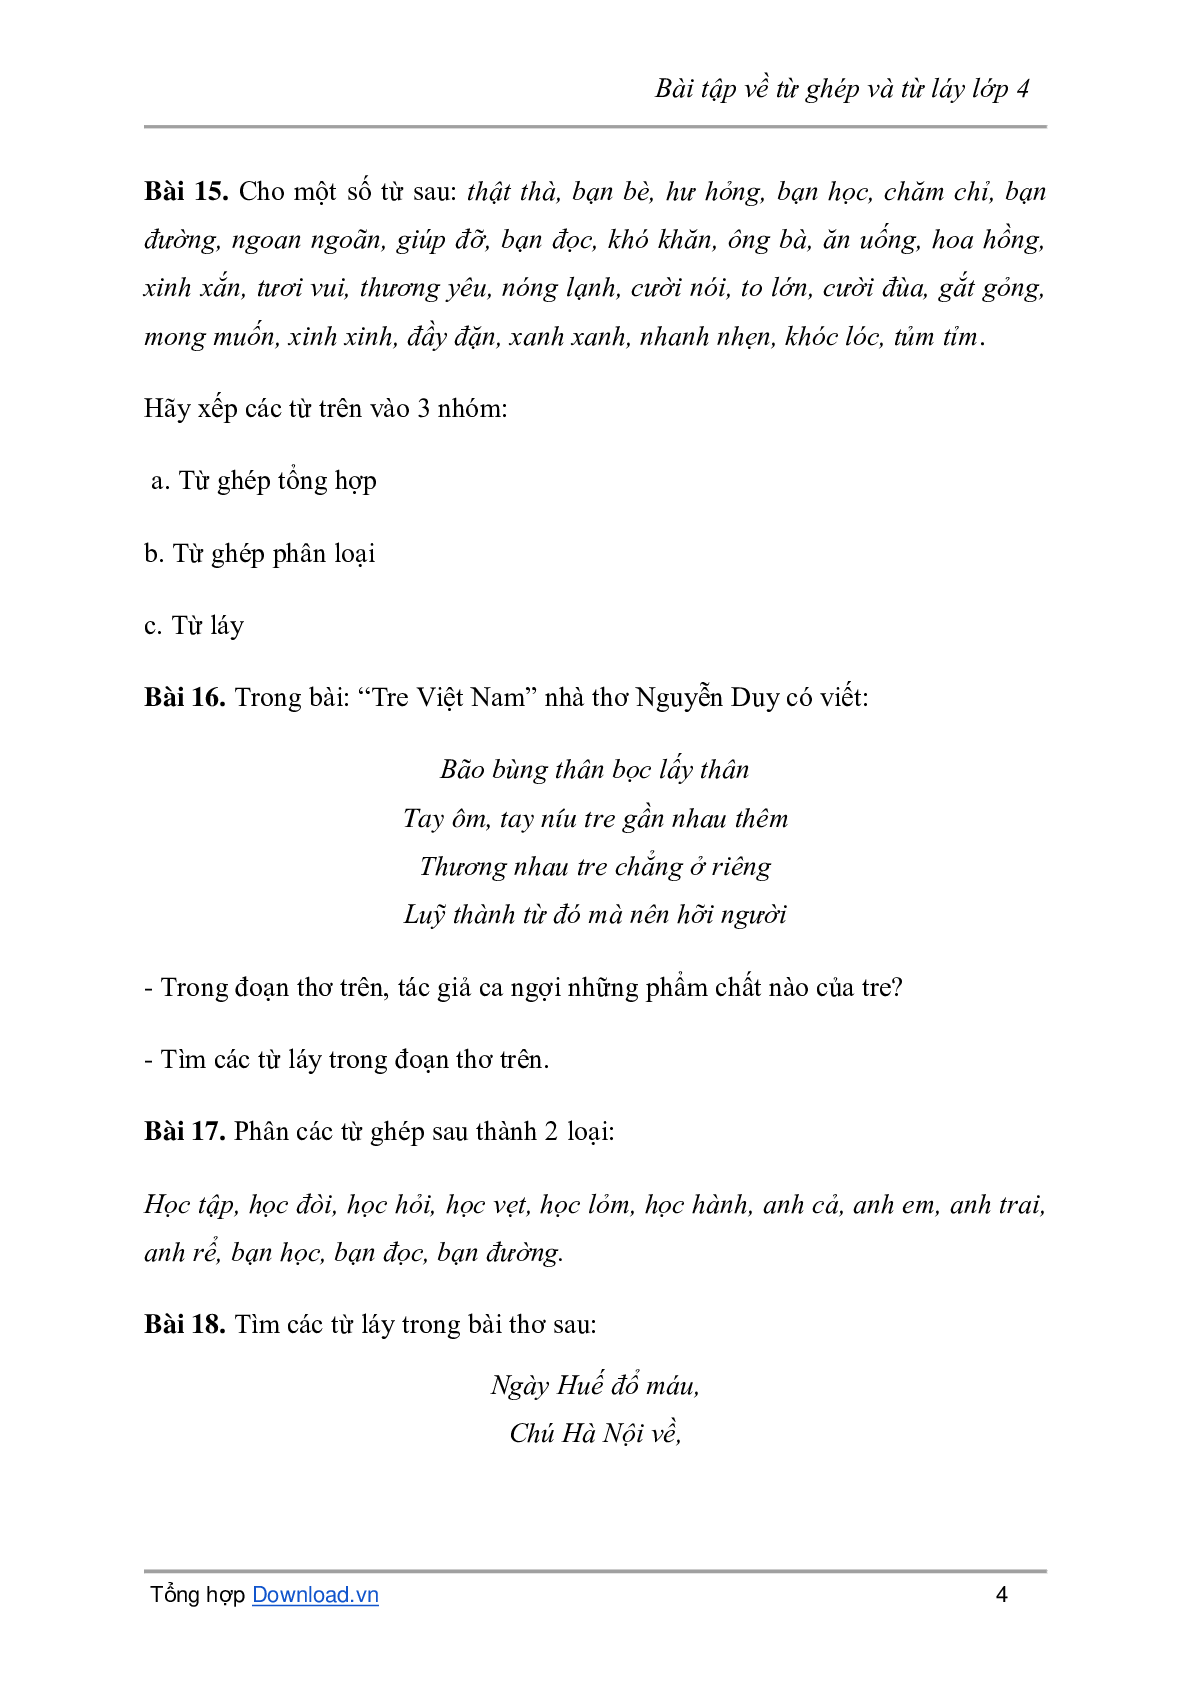 Bài tập về từ ghép và từ láy môn Tiếng Việt lớp 4 có đáp án (trang 4)